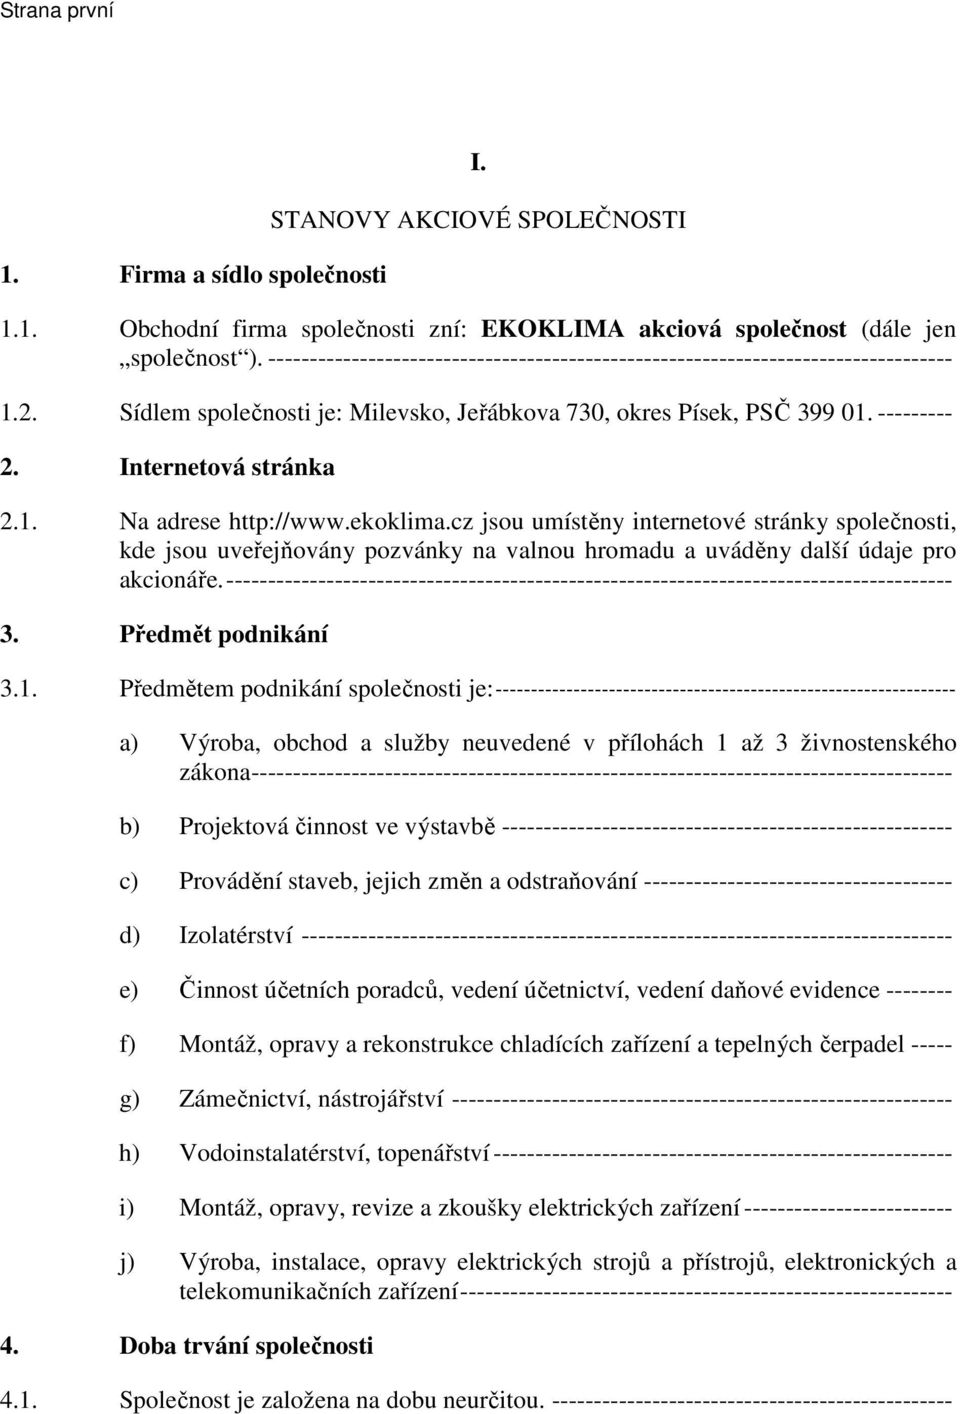 ekoklima.cz jsou umístěny internetové stránky společnosti, kde jsou uveřejňovány pozvánky na valnou hromadu a uváděny další údaje pro akcionáře.